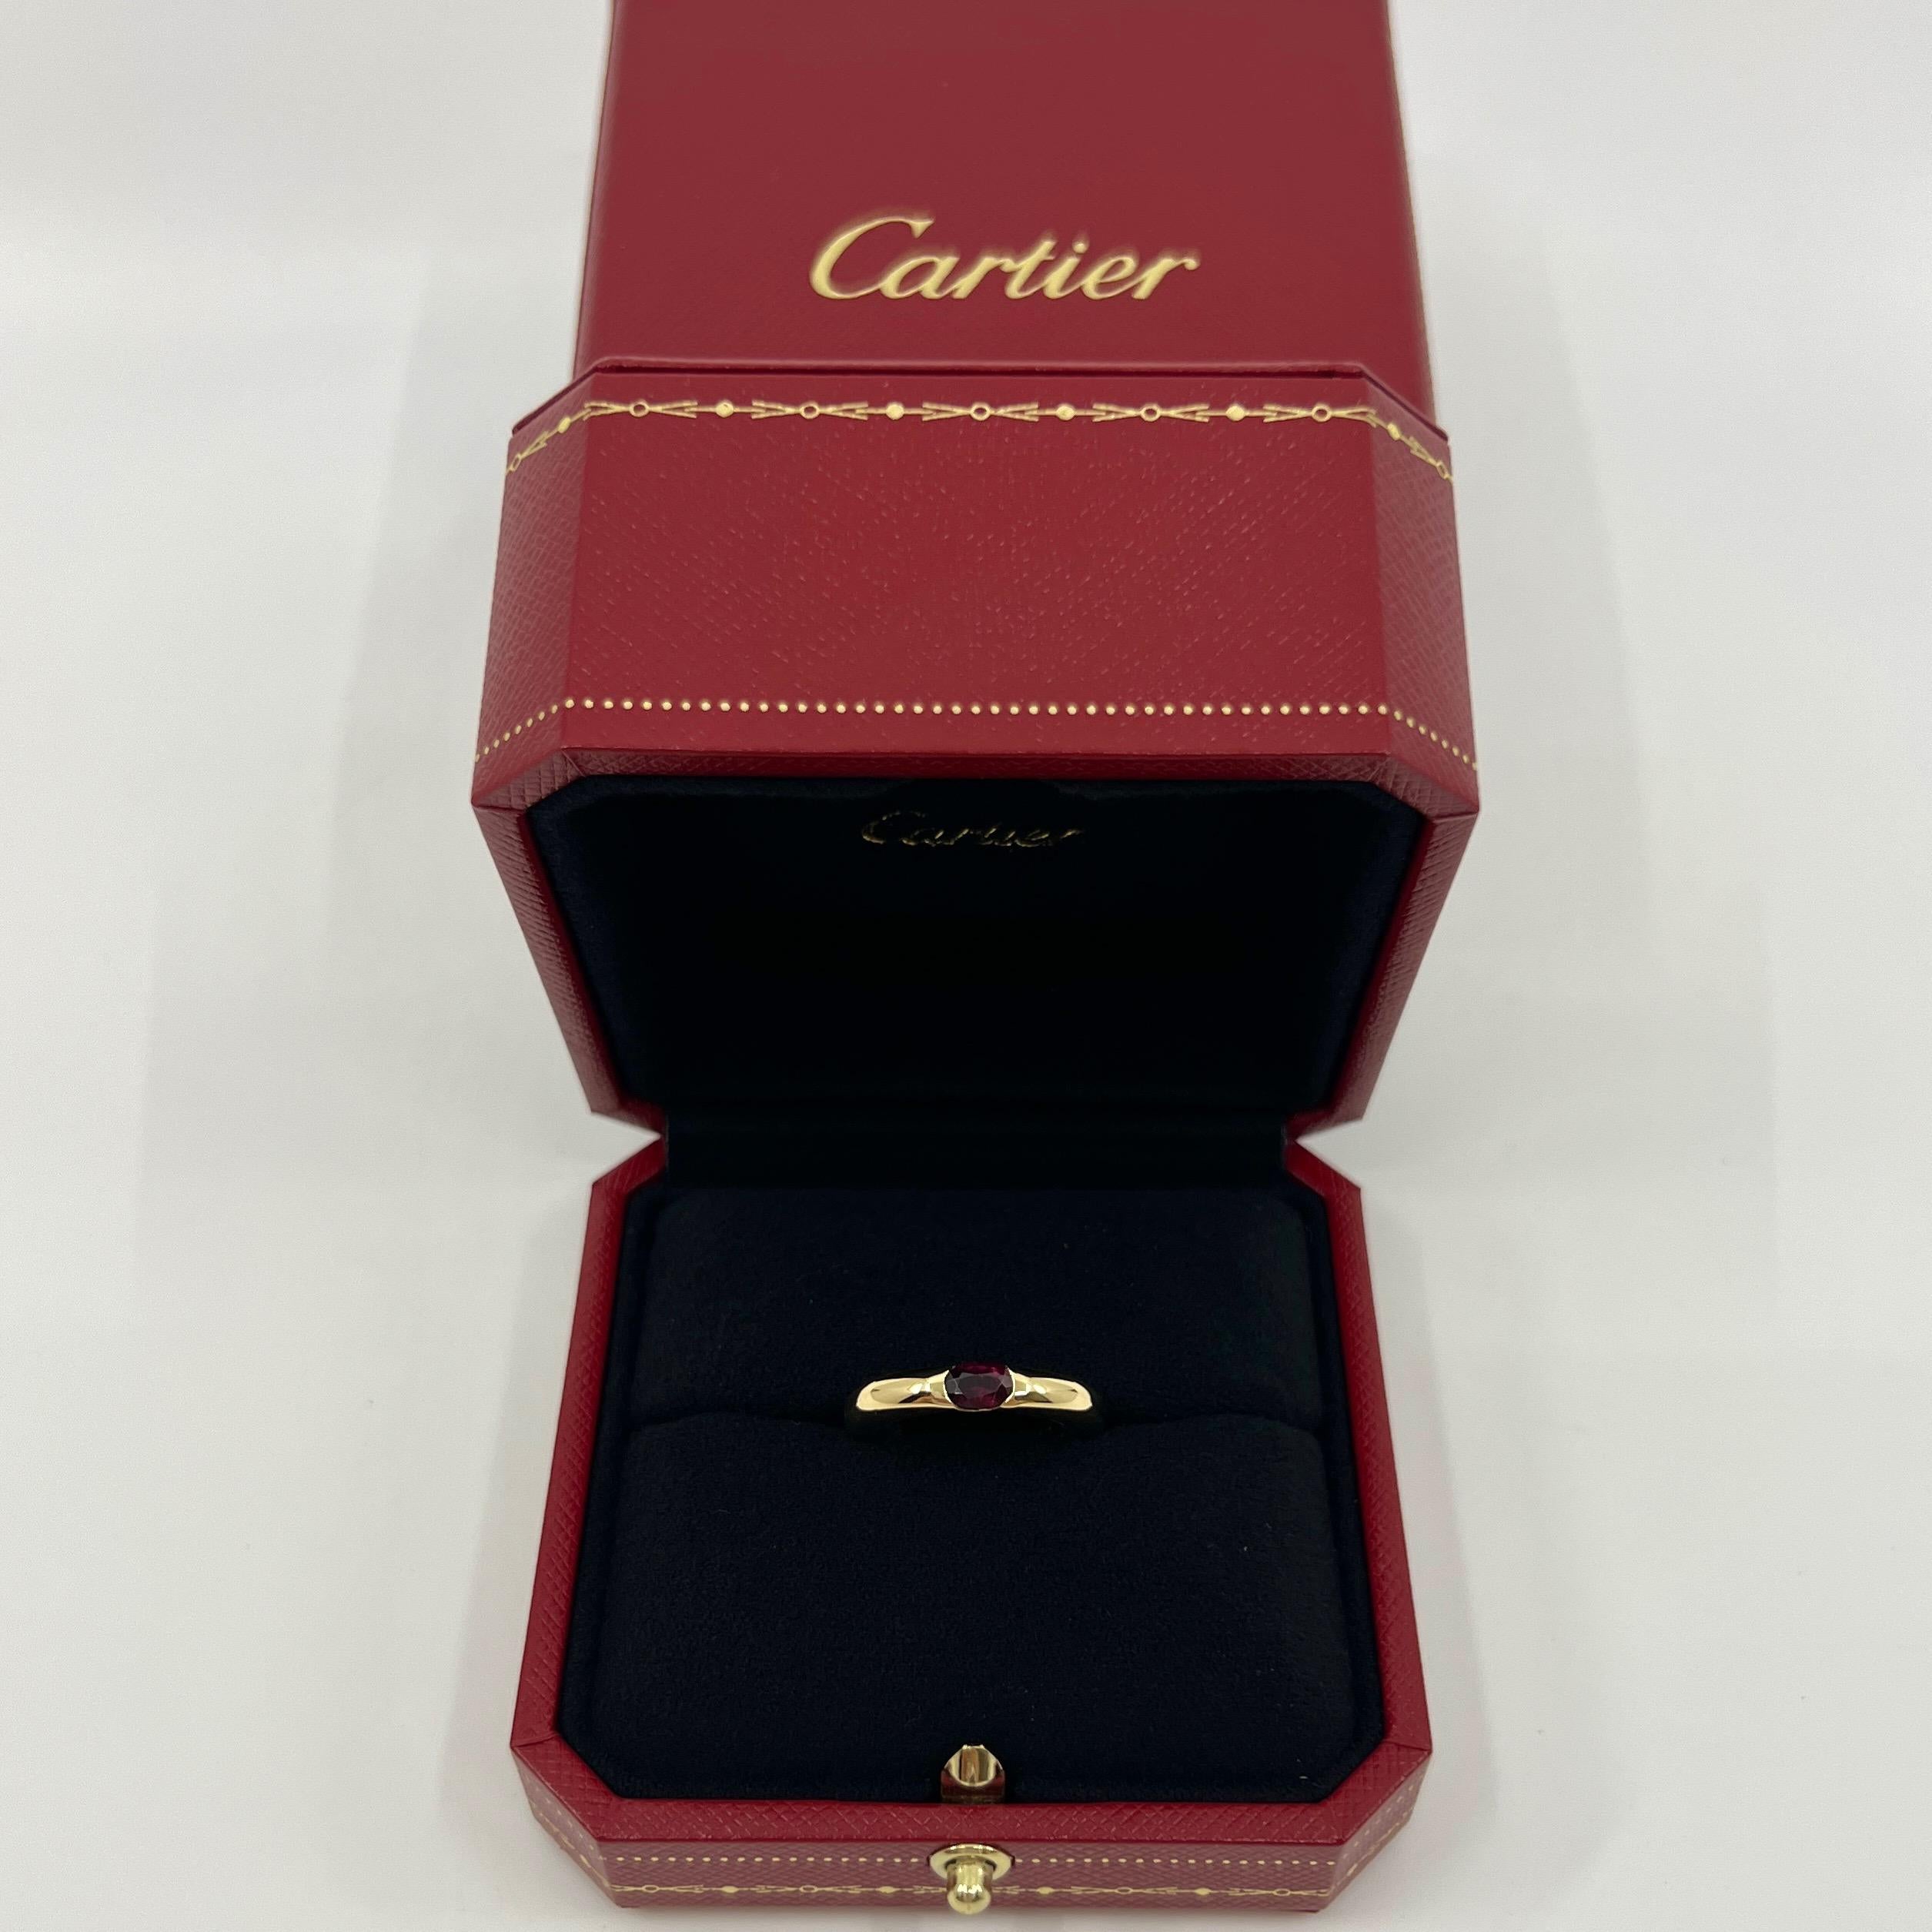 Vintage Cartier Deep Red Ruby 18k Gelbgold Solitaire Ring.

Atemberaubender Ring aus Gelbgold, besetzt mit einem feinen tiefroten Rubin. Edle Schmuckhäuser wie Cartier verwenden nur die feinsten Edelsteine, und dieser Rubin ist keine Ausnahme. Ein